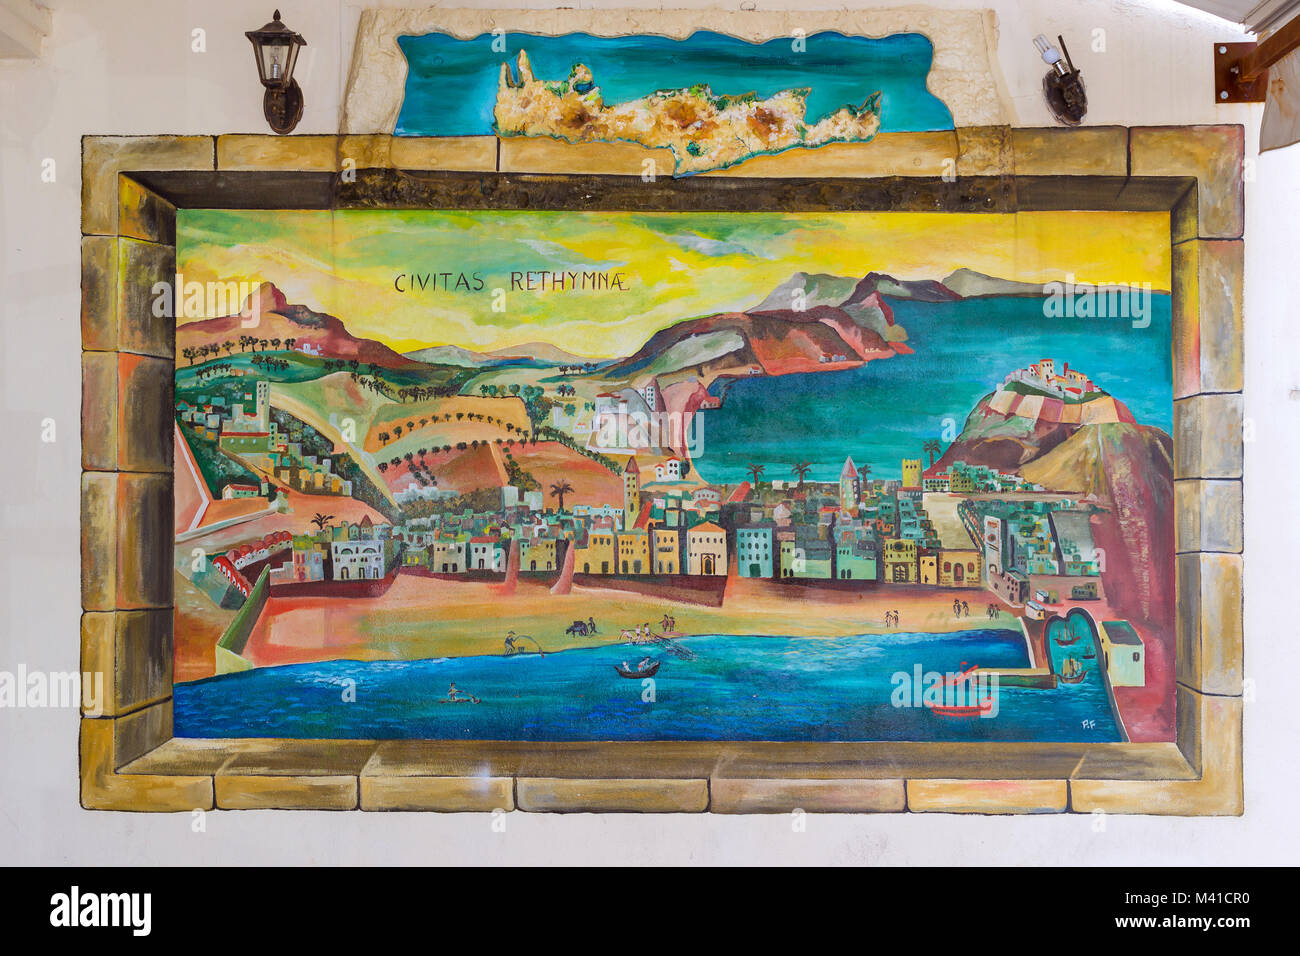 Rethymno, Grecia - 3 Maggio 2016: Street immagine sul muro della casa con immagini del paesaggio cretese in Grecia. Arte di strada su itinerari turistici della città di villeggiatura Foto Stock